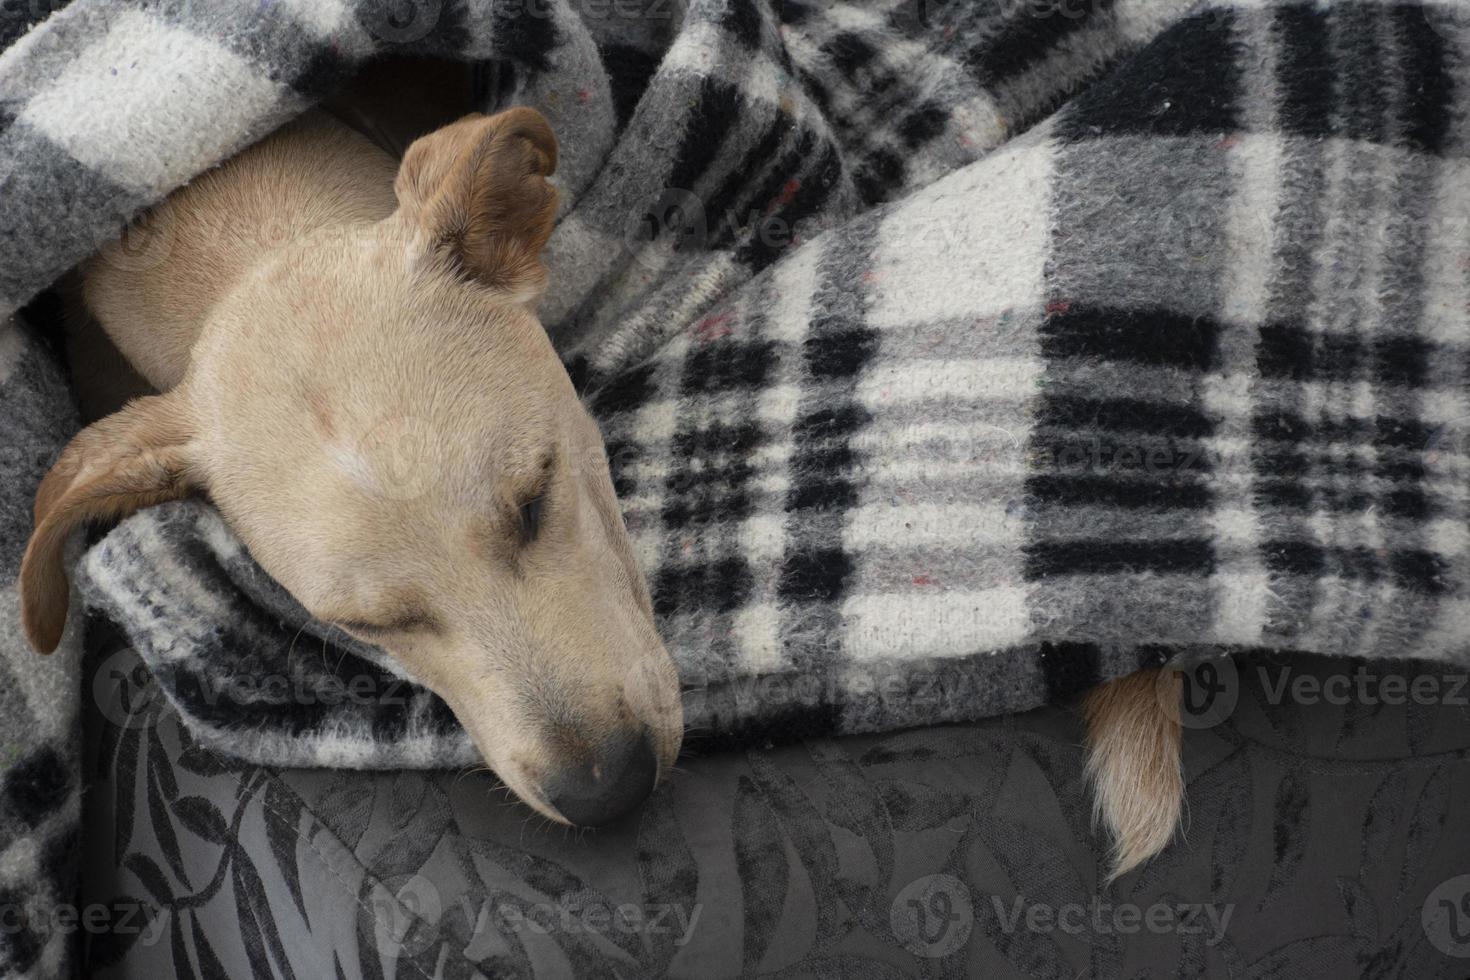 vermoeide hond slaapt onder deken op poef foto